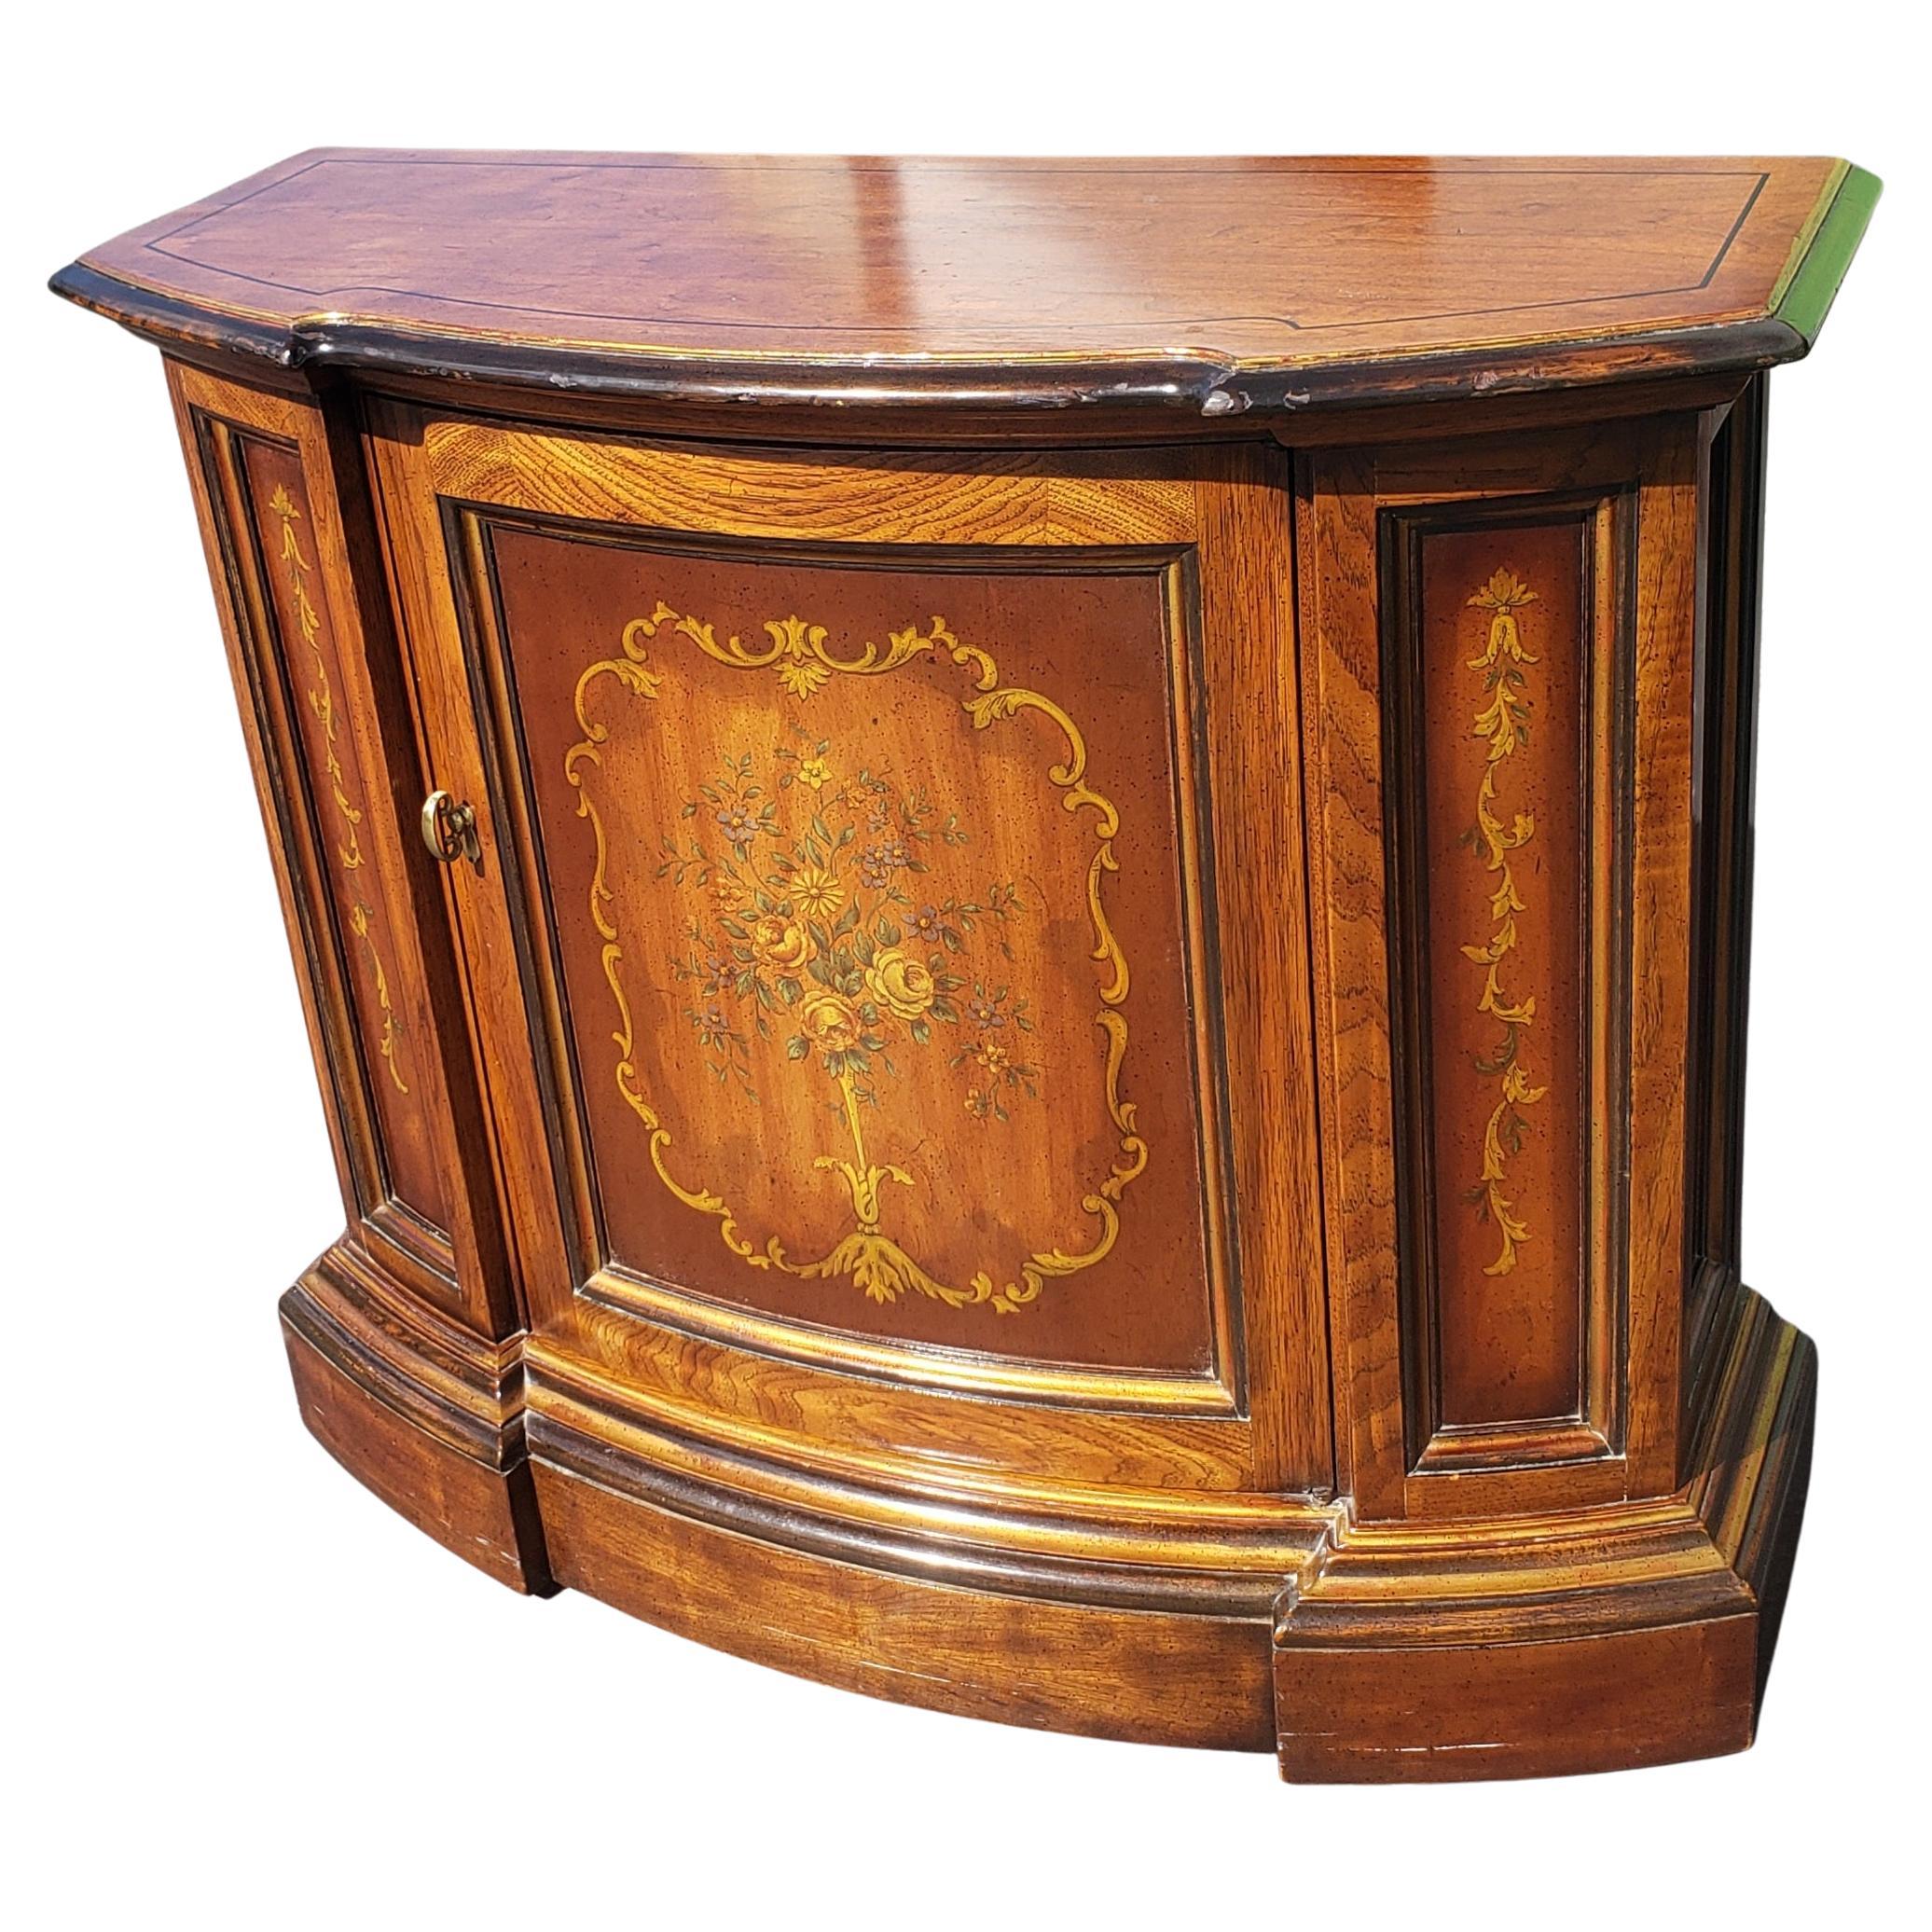 Schöne Drexel Erbe Furnishings Ornate Konsole Schrank Tisch. 
Guter alter Zustand. Einige kleine Schrammen. 
Maße: 35